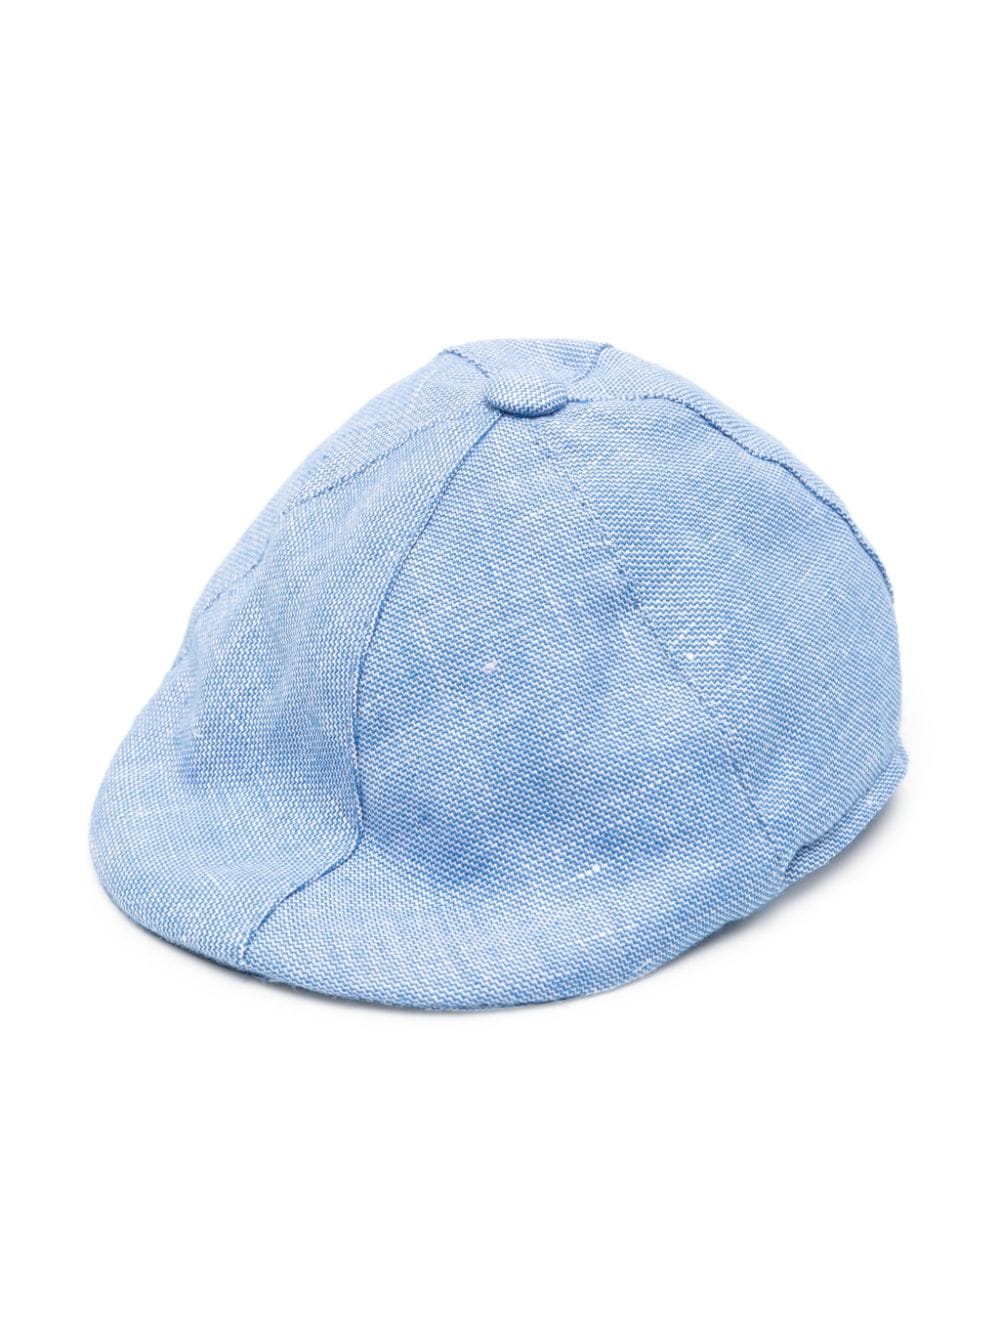 Cappello neonata blu/bianco